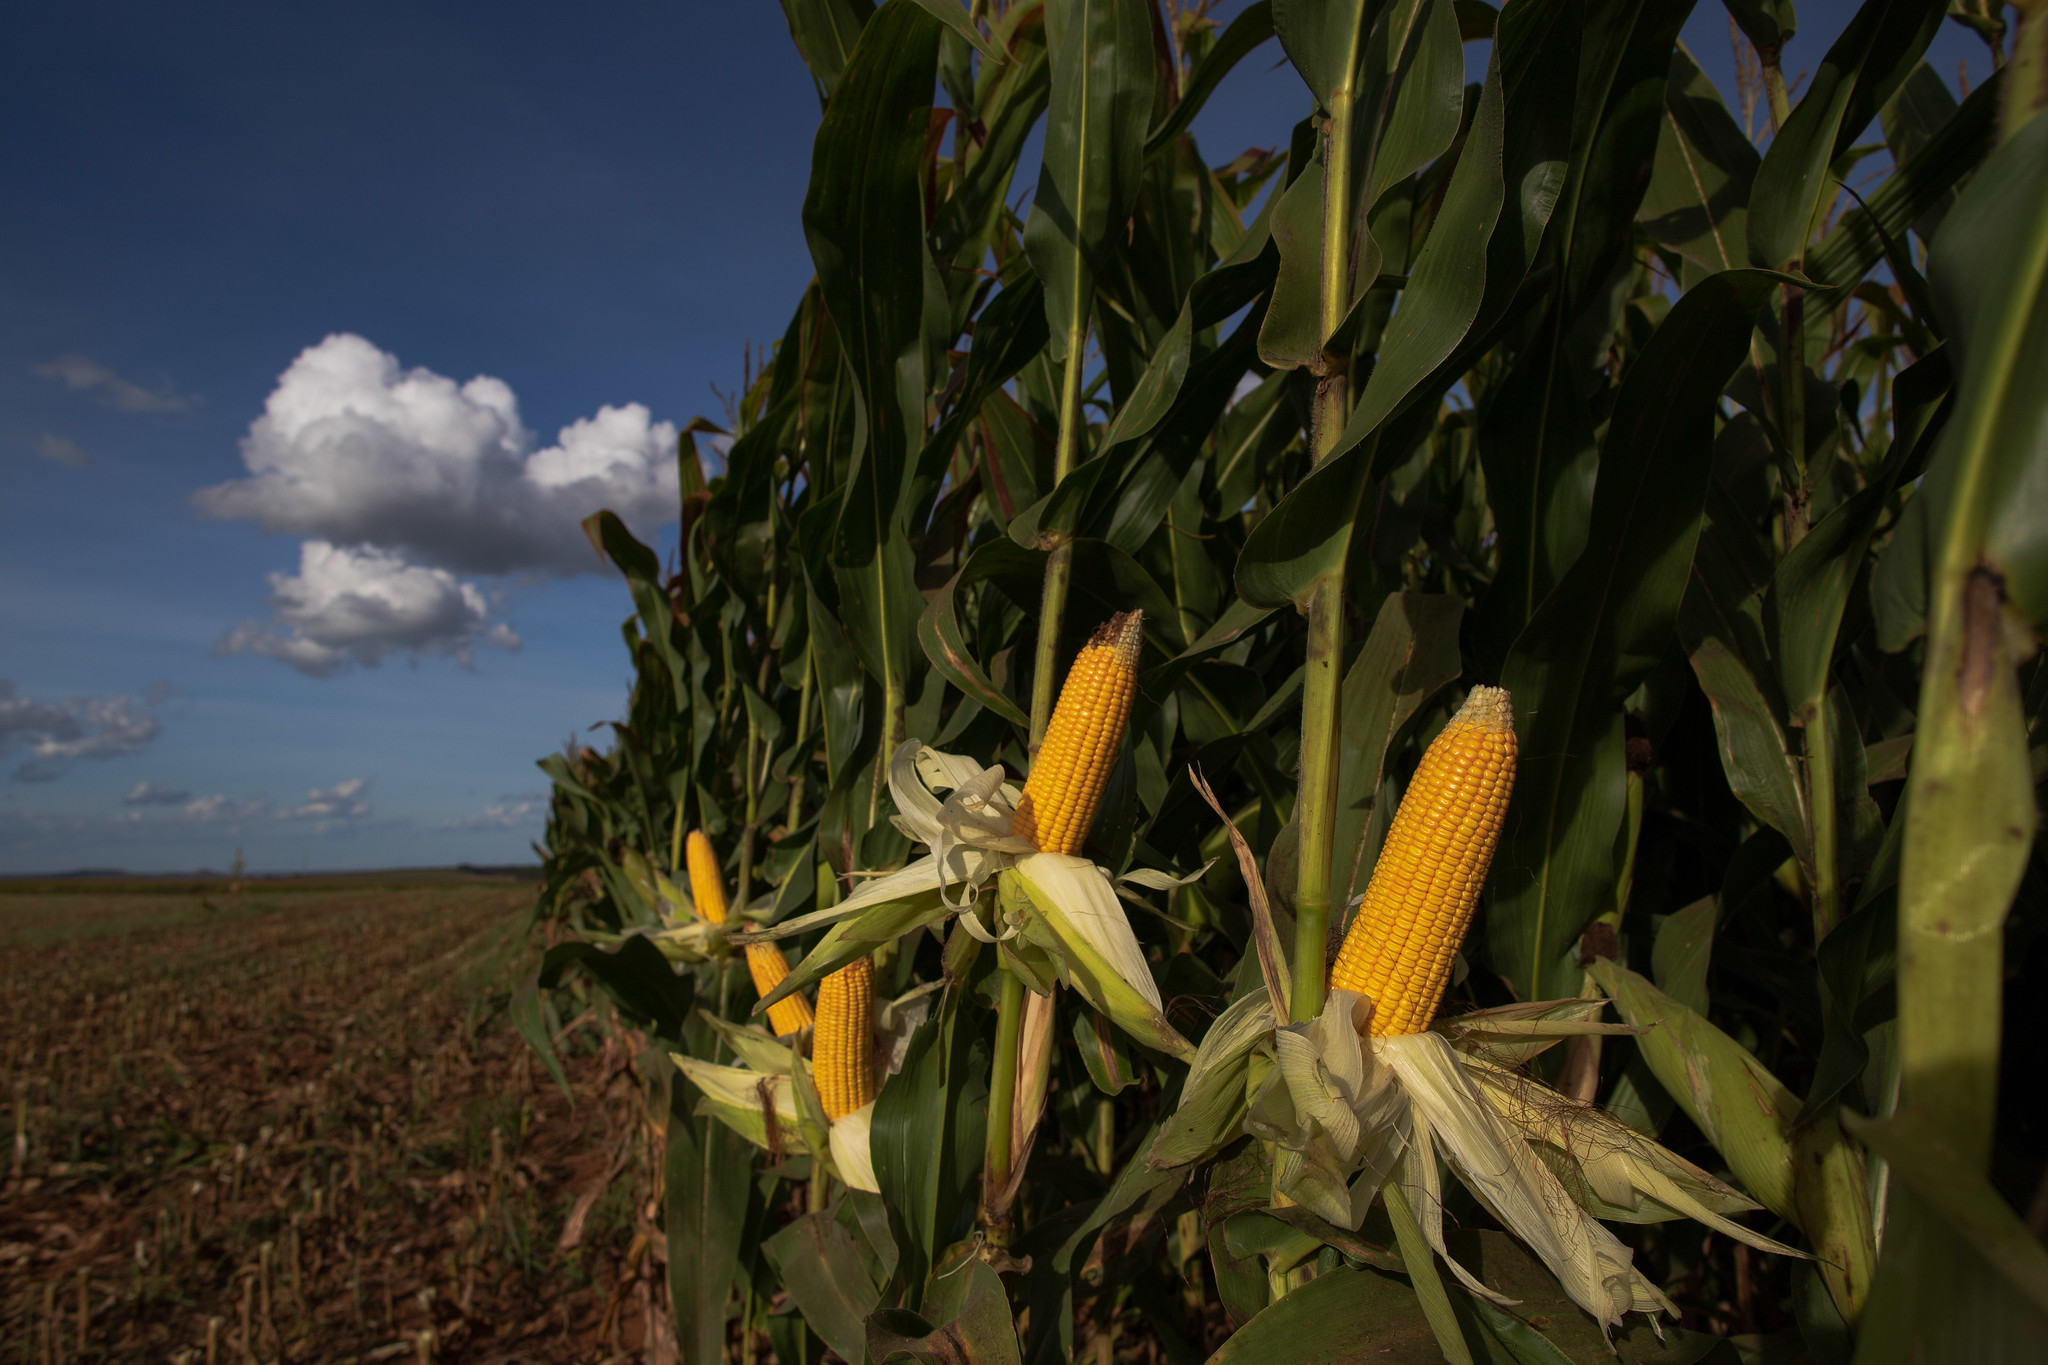 Corn harvest reached 57% in Rio Grande do Sul